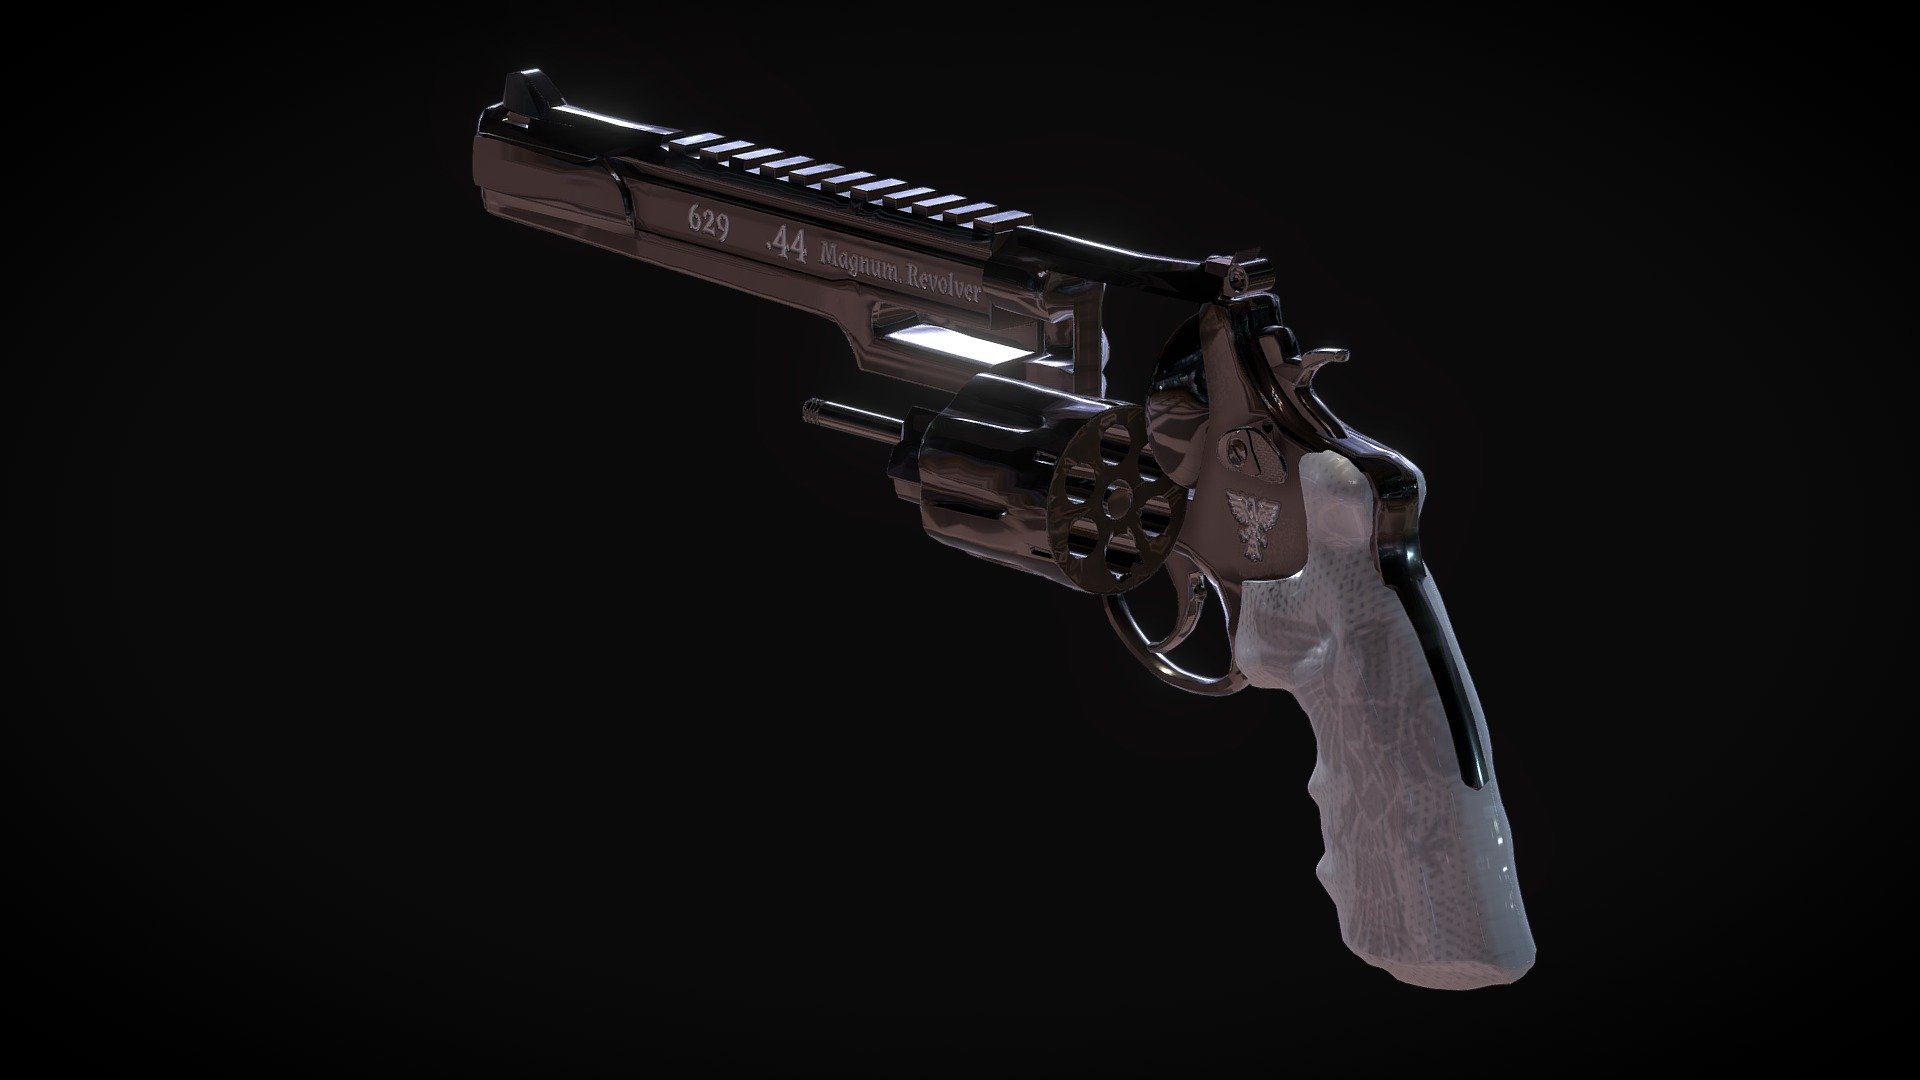 629 - .44 Magnum, Revolver